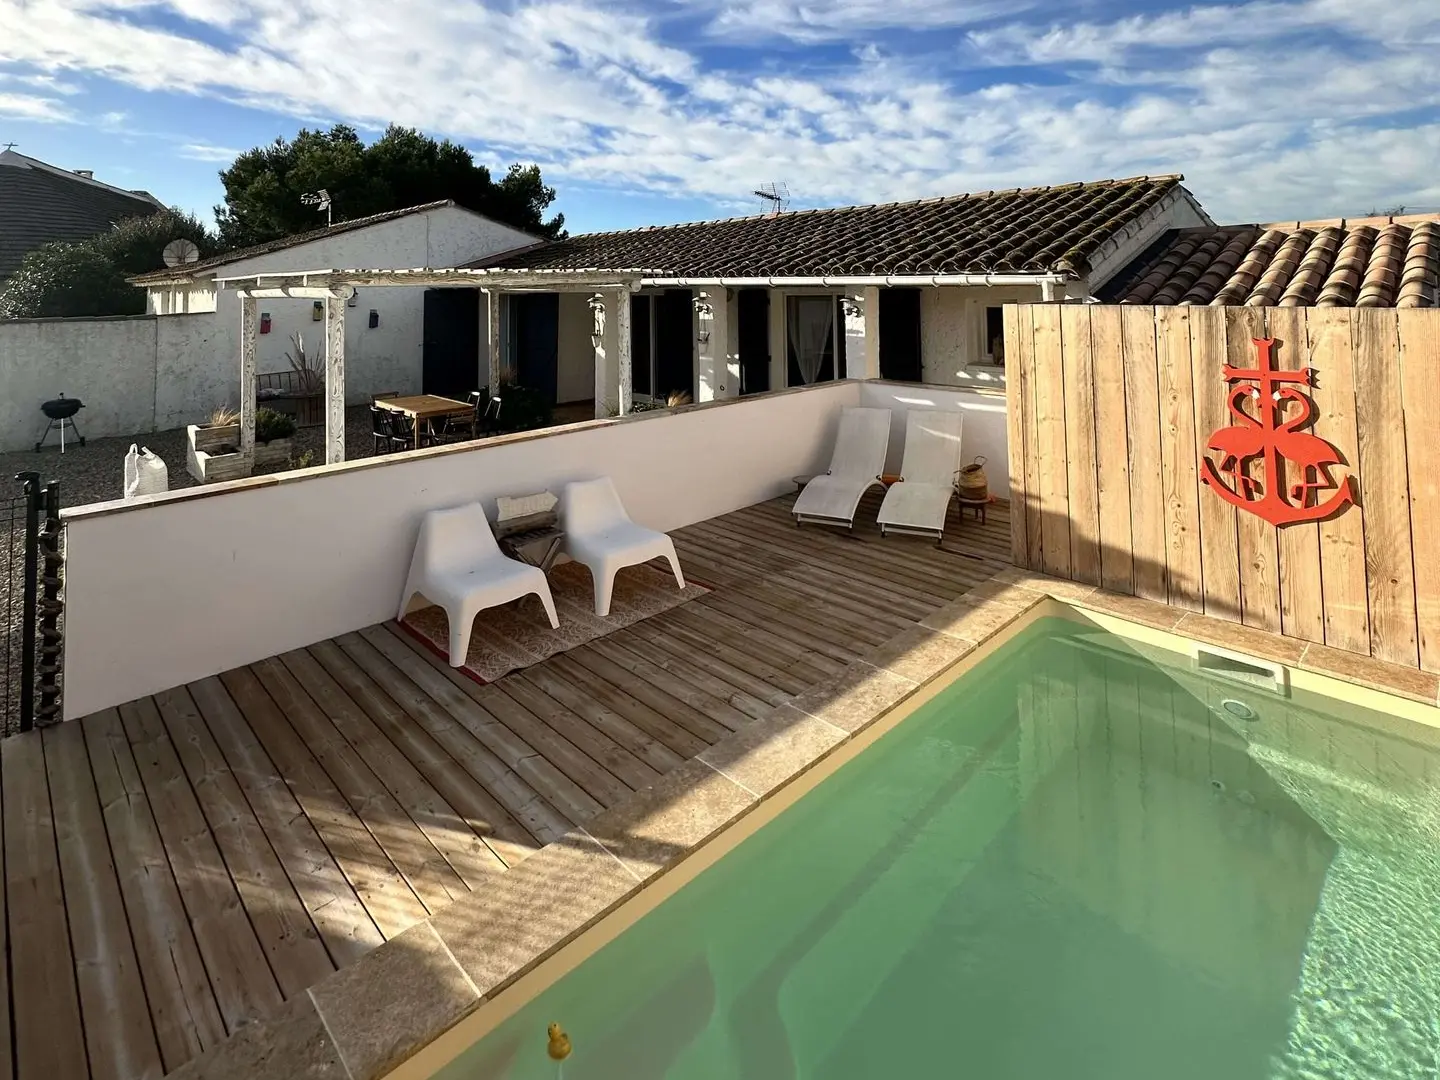 Une arrière-cour accueillante avec une terrasse en bois, une piscine et des meubles d’extérieur modernes, sous un ciel bleu clair.